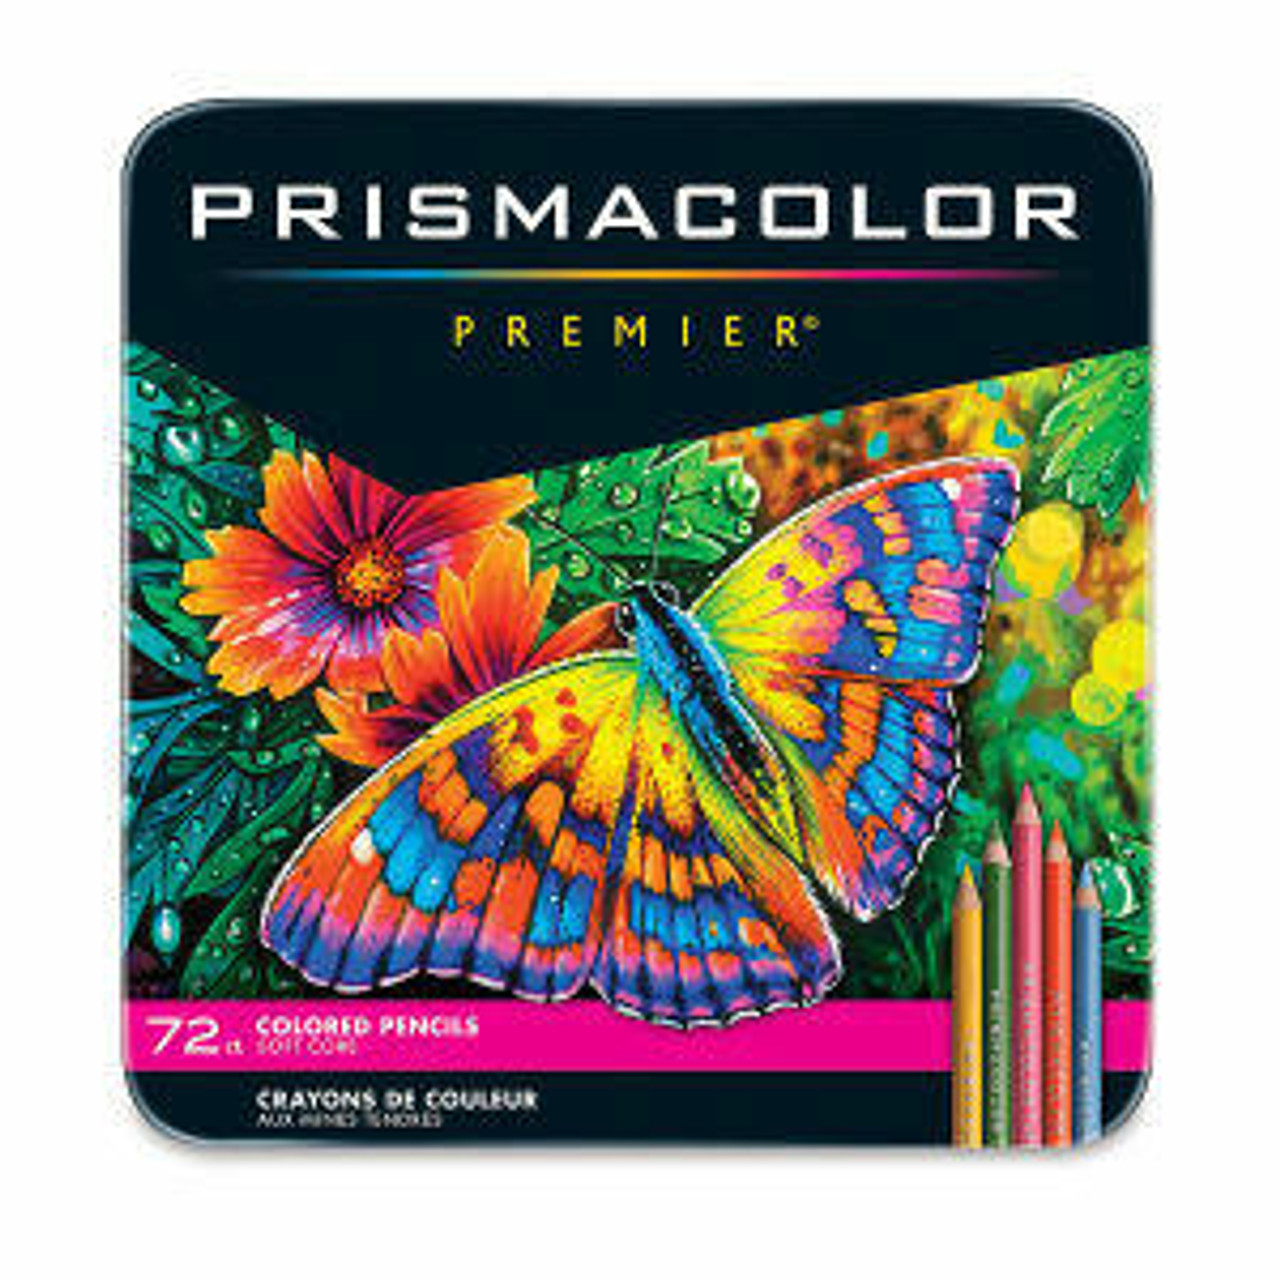 https://cdn11.bigcommerce.com/s-9uf88xhege/images/stencil/1280x1280/products/626/50049/sanford-prismacolor-premier-thick-core-colored-pencil-72-set__70648.1689964674.jpg?c=1